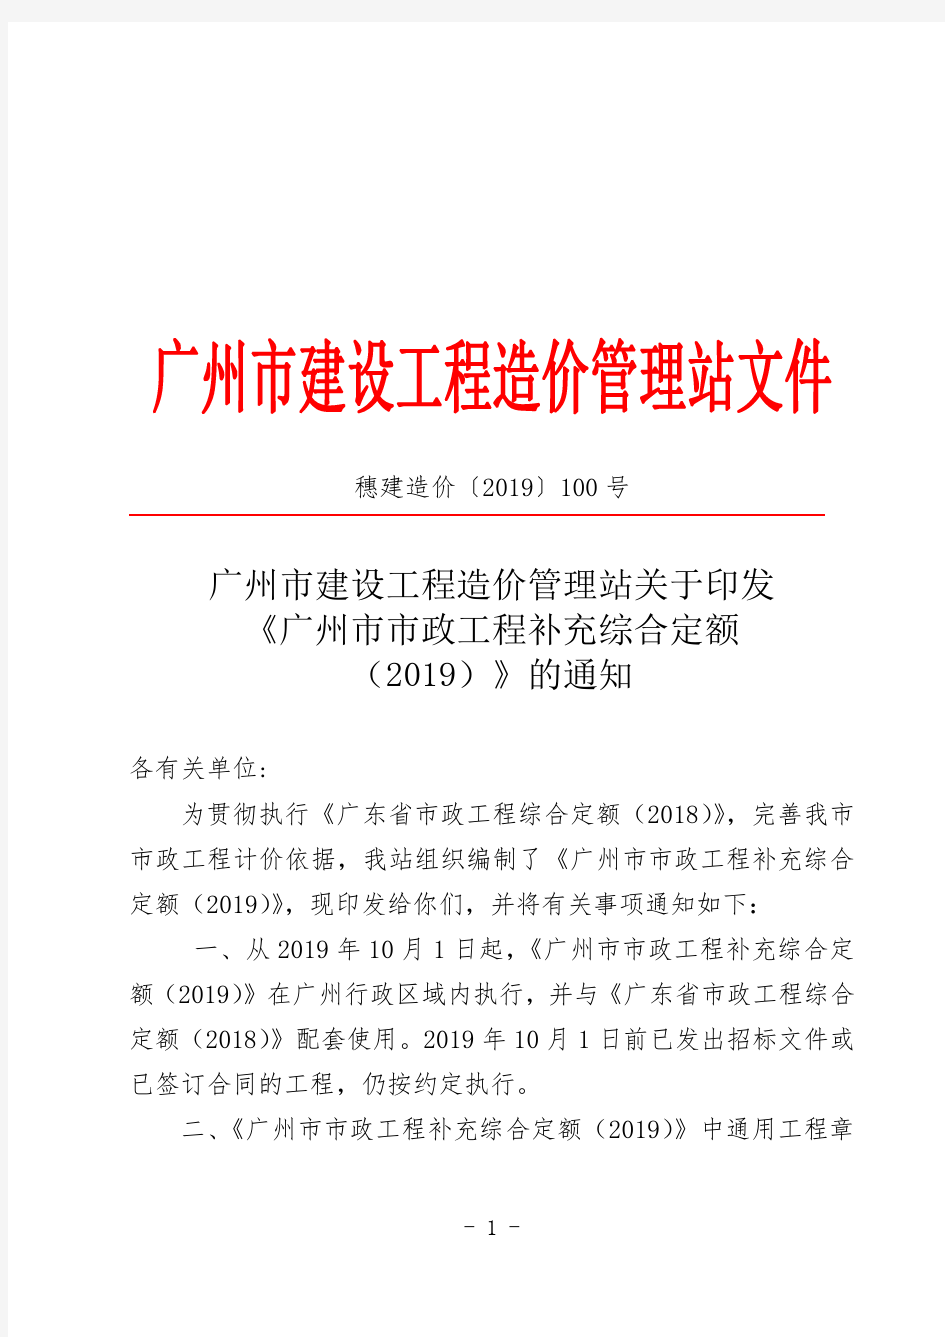 广州市市政工程补充综合定额(2019)